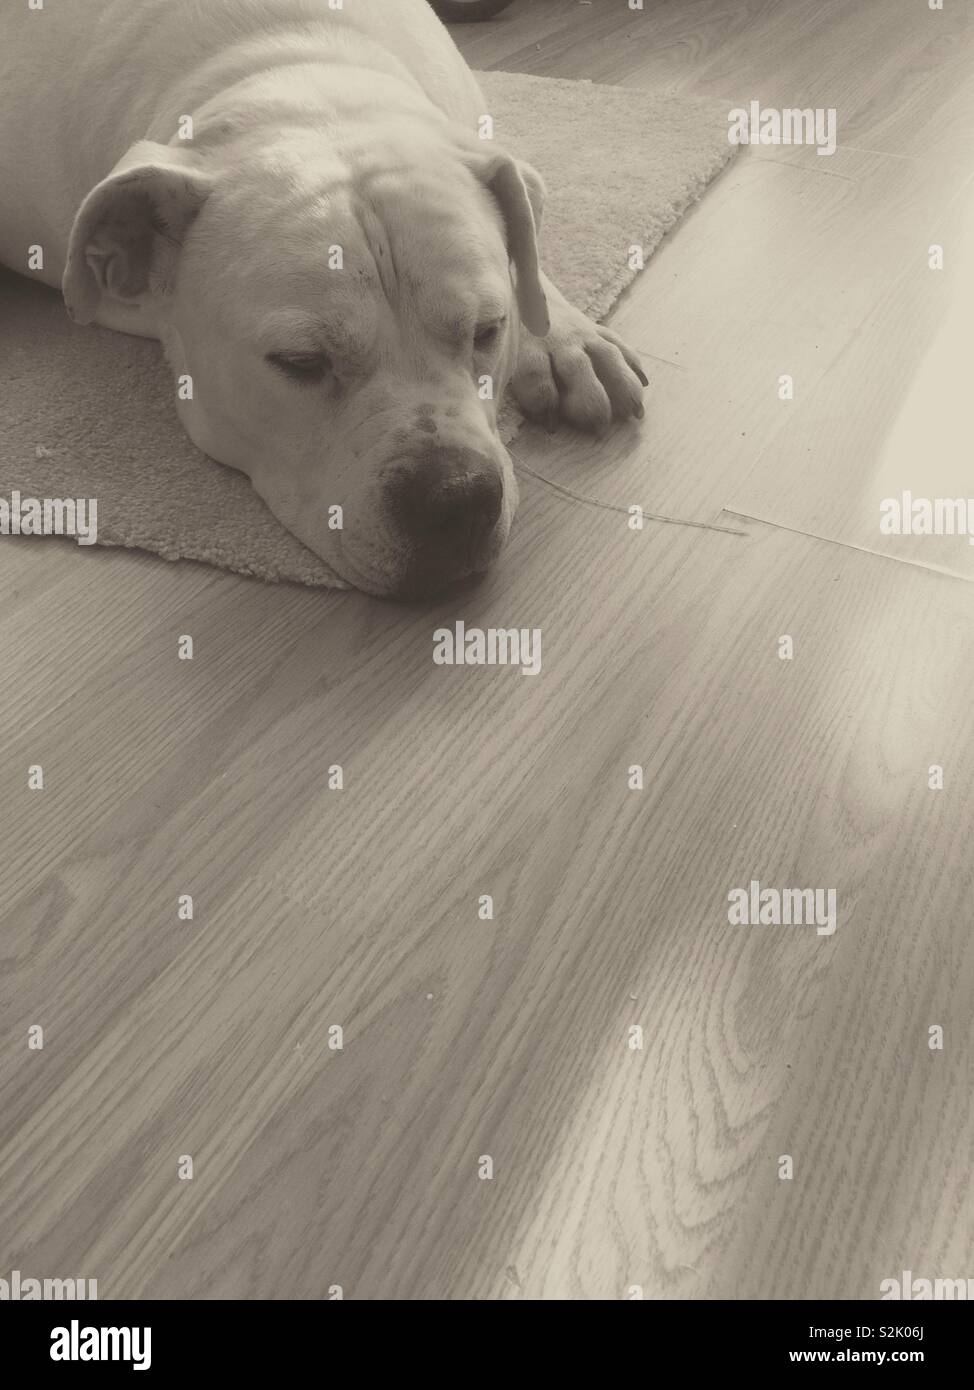 American Bulldog blanc dormir close-up Banque D'Images